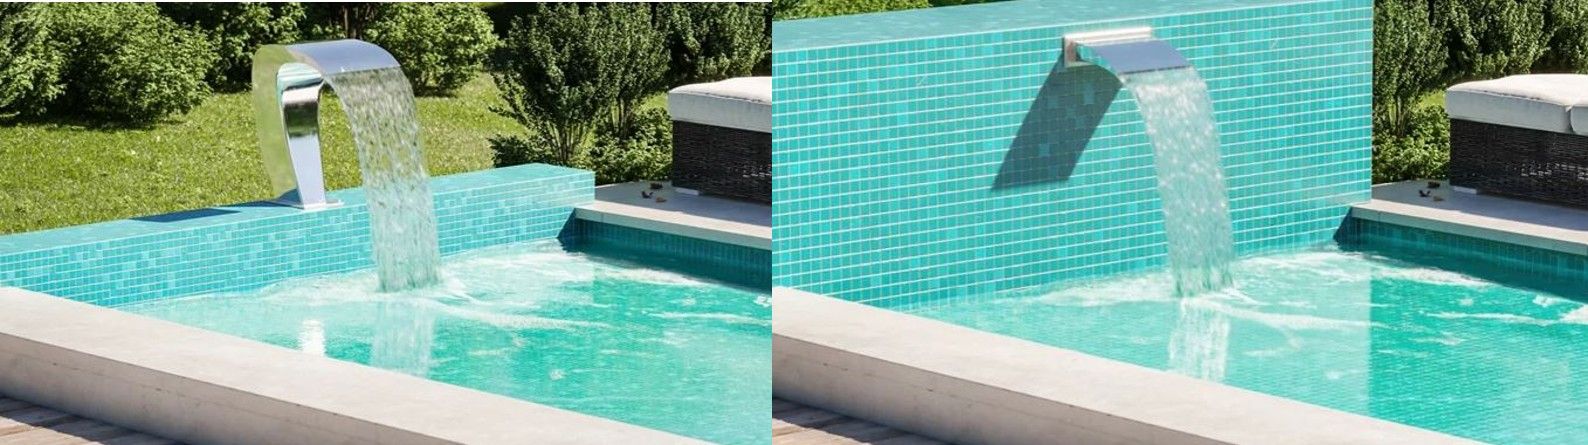 Por qué tener piscinas con cascadas en casa?